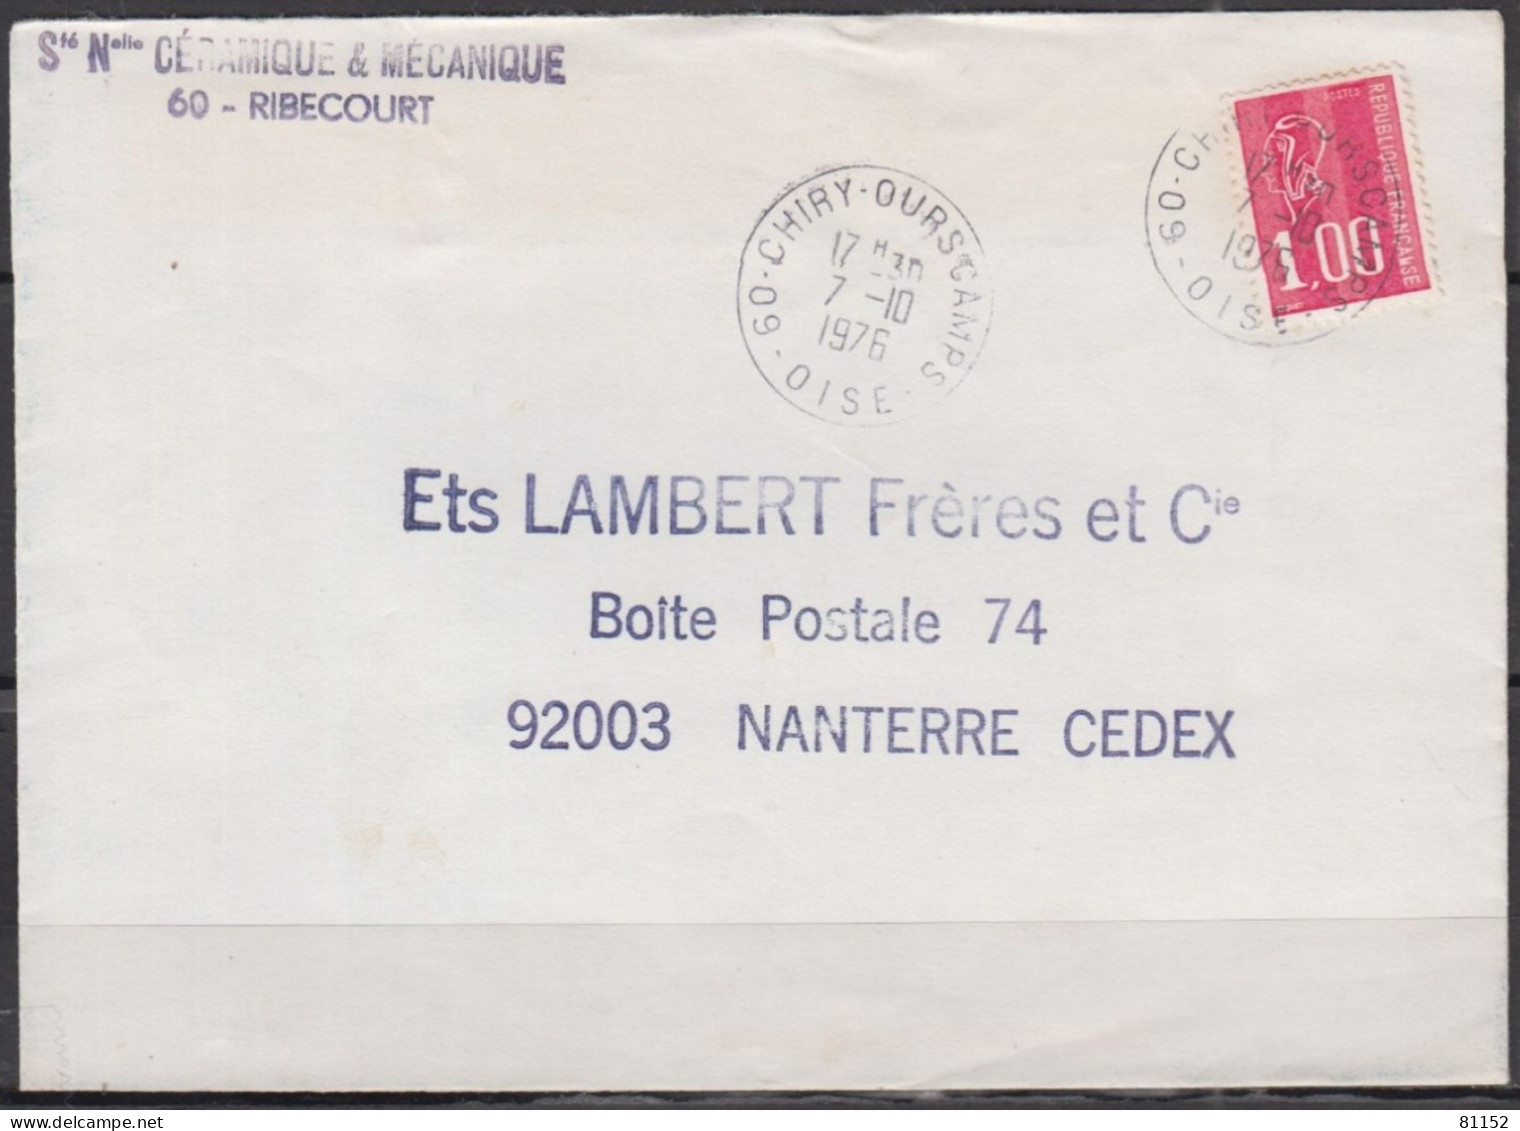 2 Lettres  Pub De 60 RIBECOURT 1976 Et 1977 Pour 92 NANTERRE Avec Mne De BEQUET 1.00F Postées à 60 CHIRY-OURSCAMPS - 1971-1976 Maríanne De Béquet